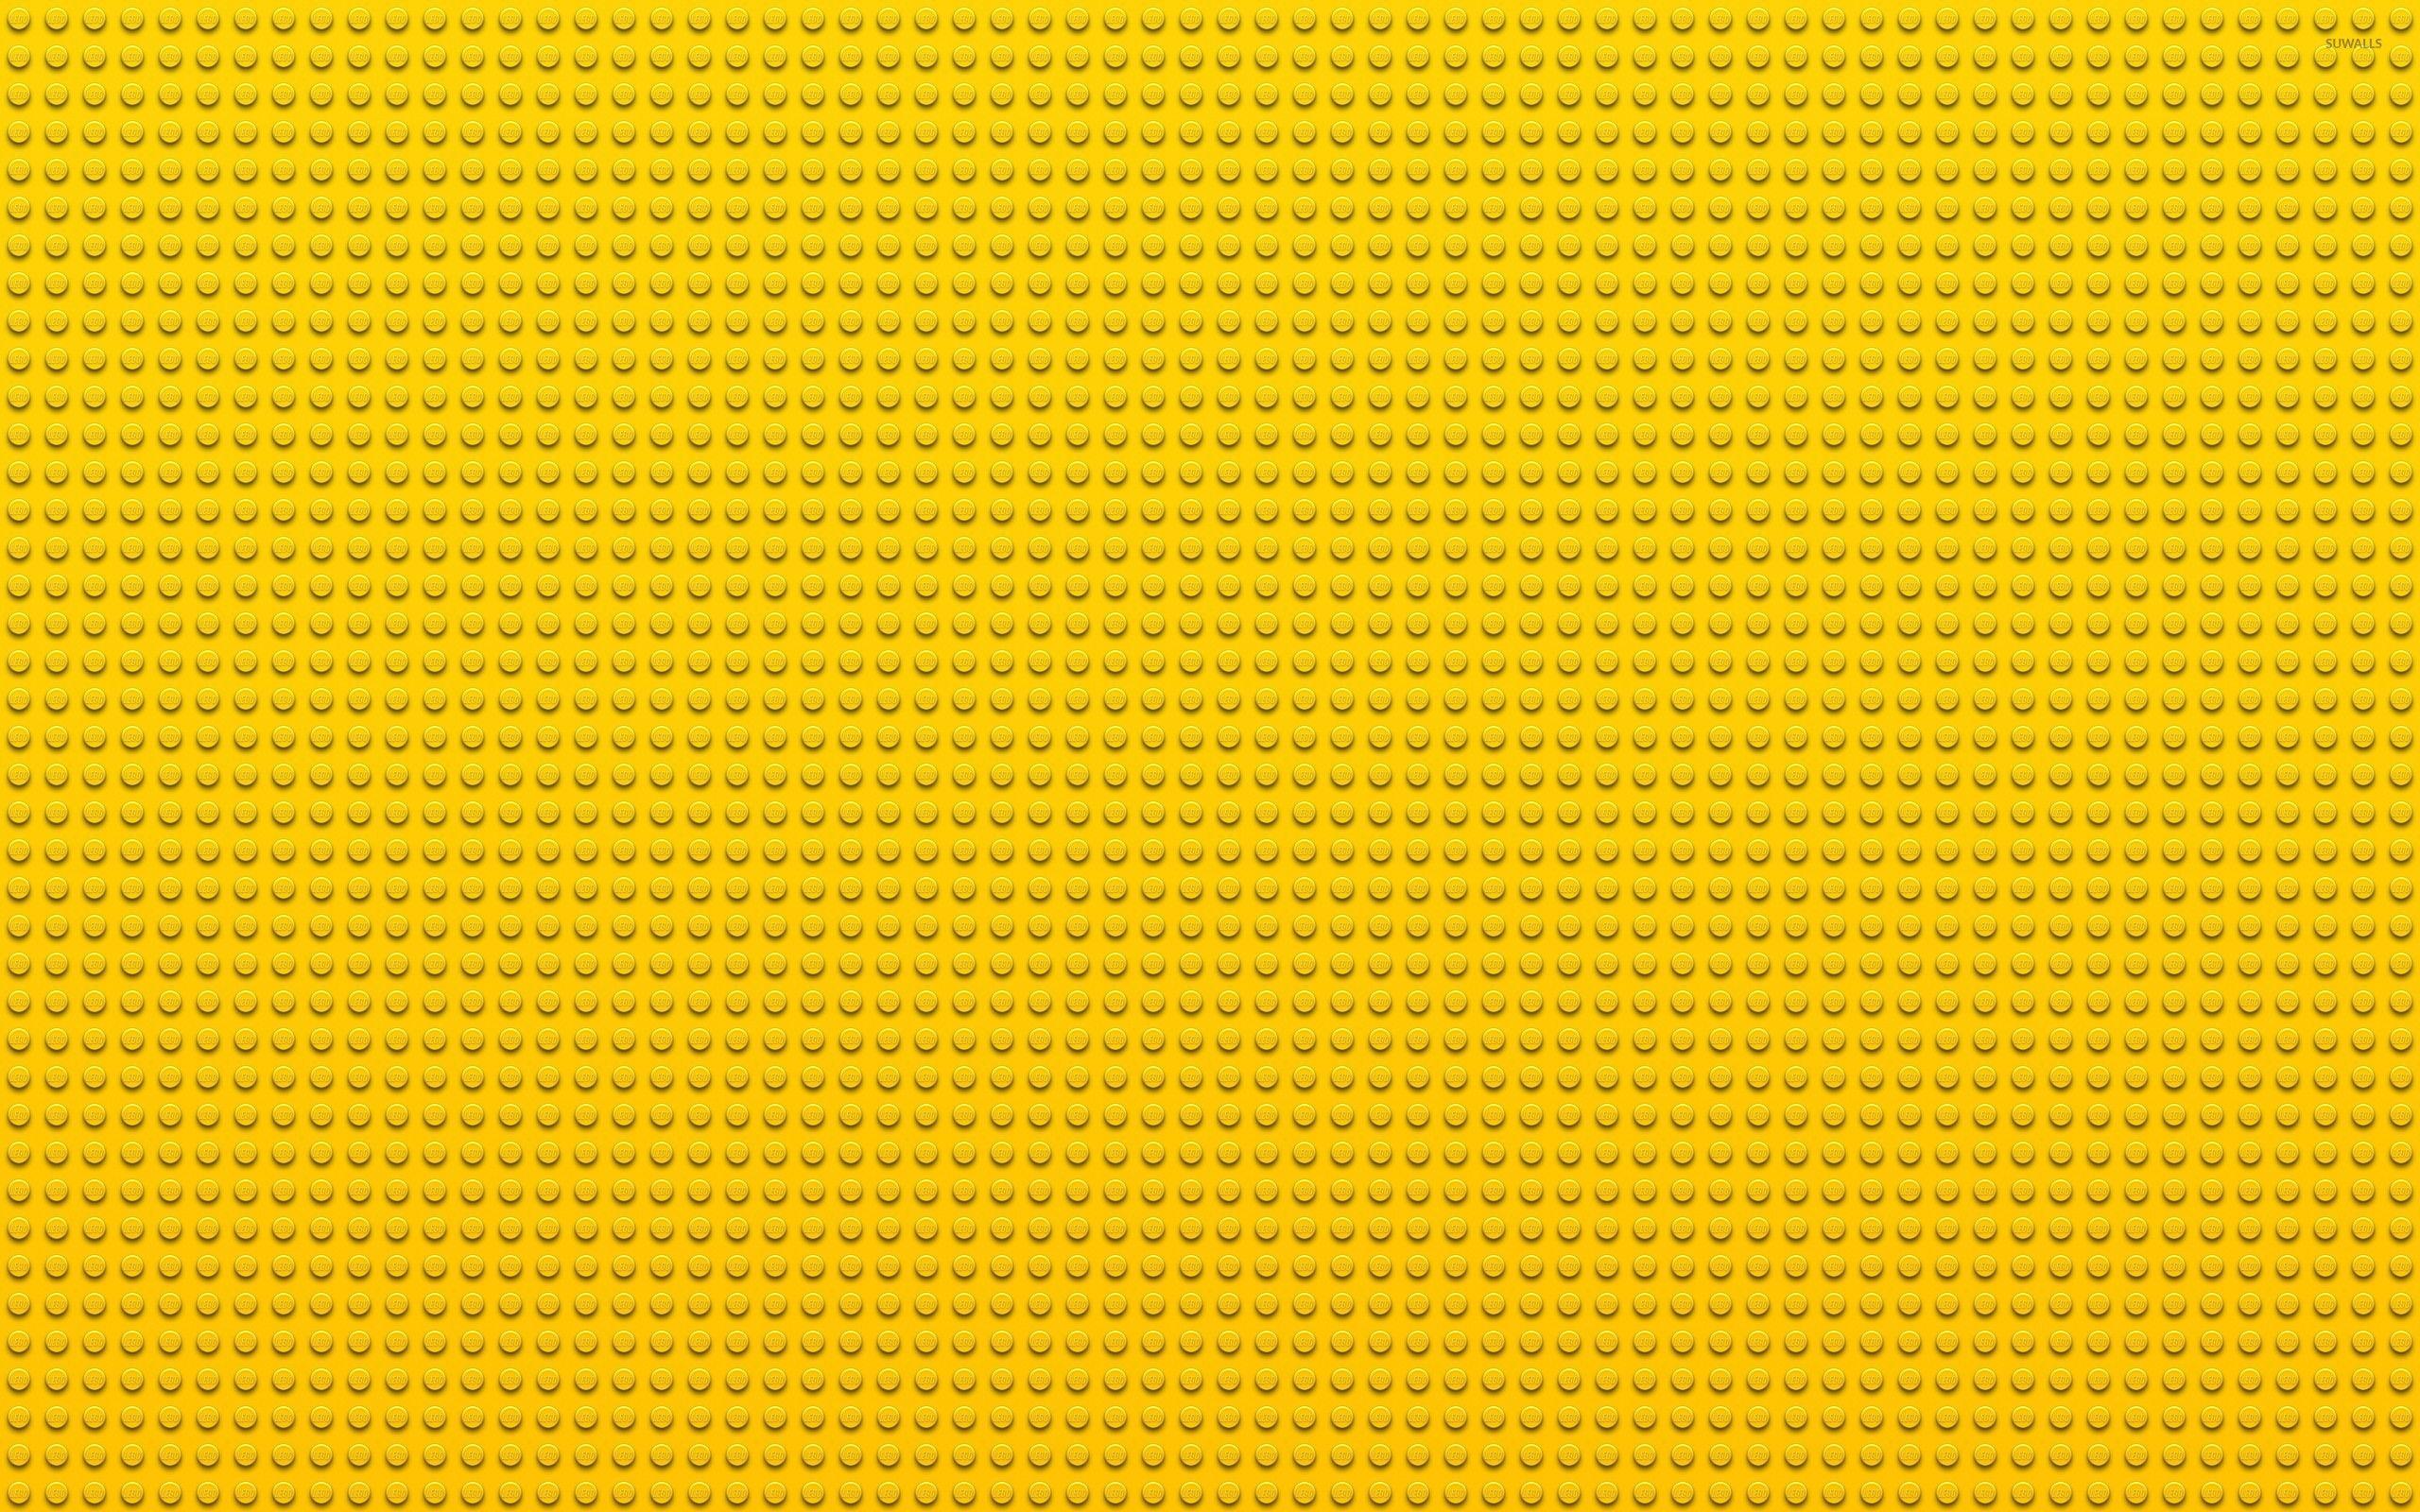 Hình nền Lego màu vàng 2560x1600 - Hình nền trừu tượng